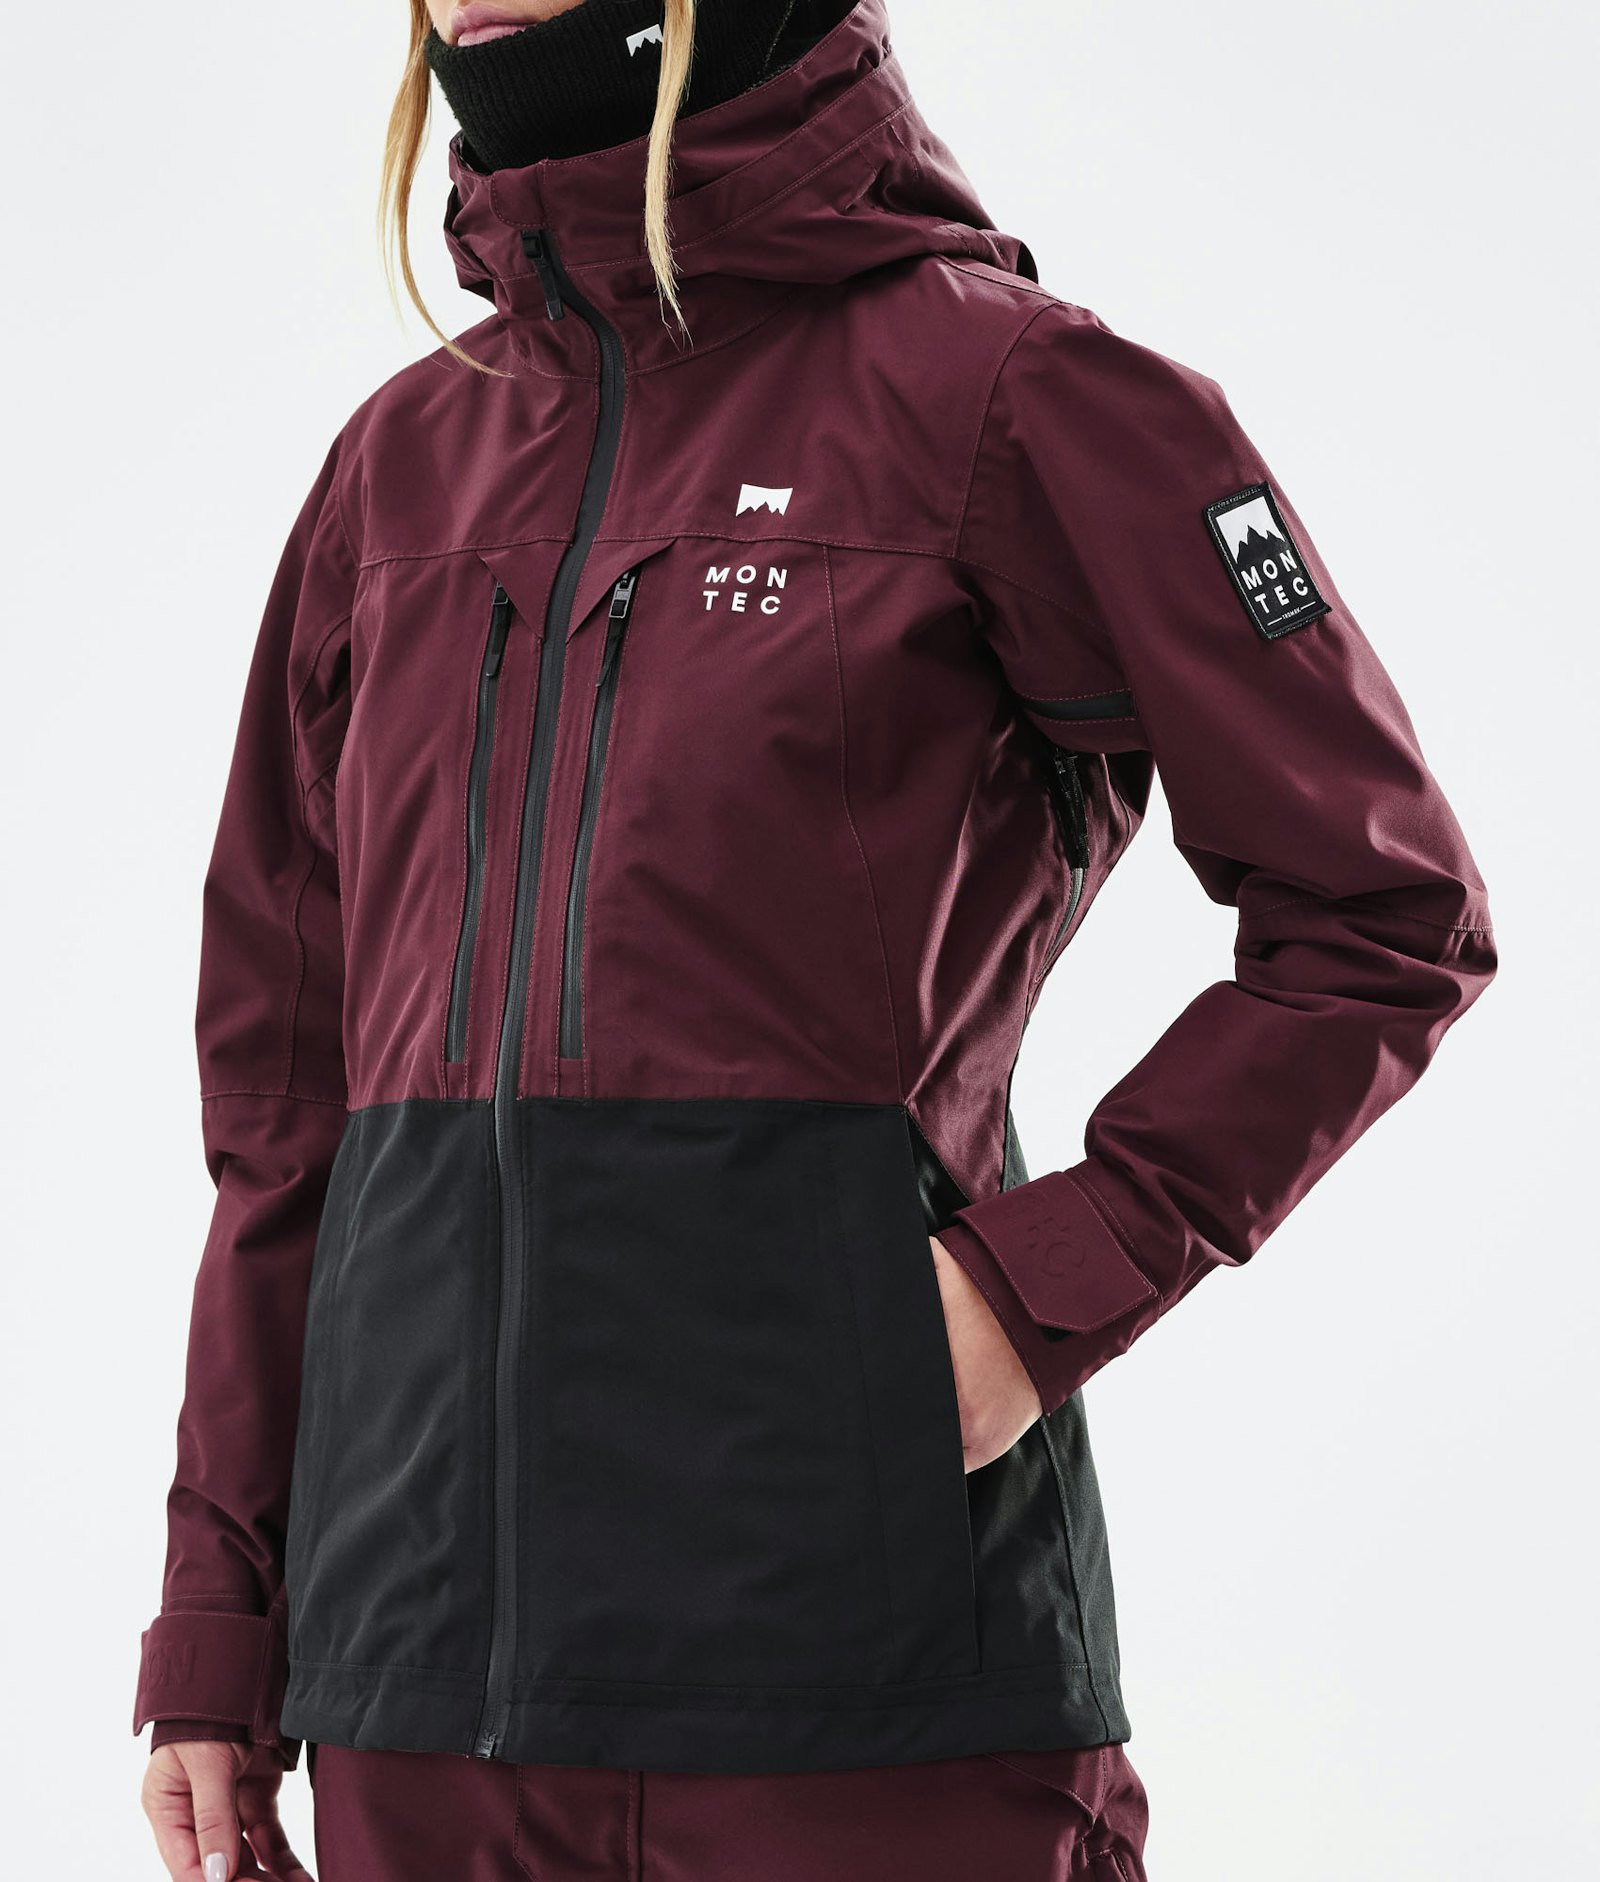 Moss W 2021 Ski Jacket Women Burgundy/Black